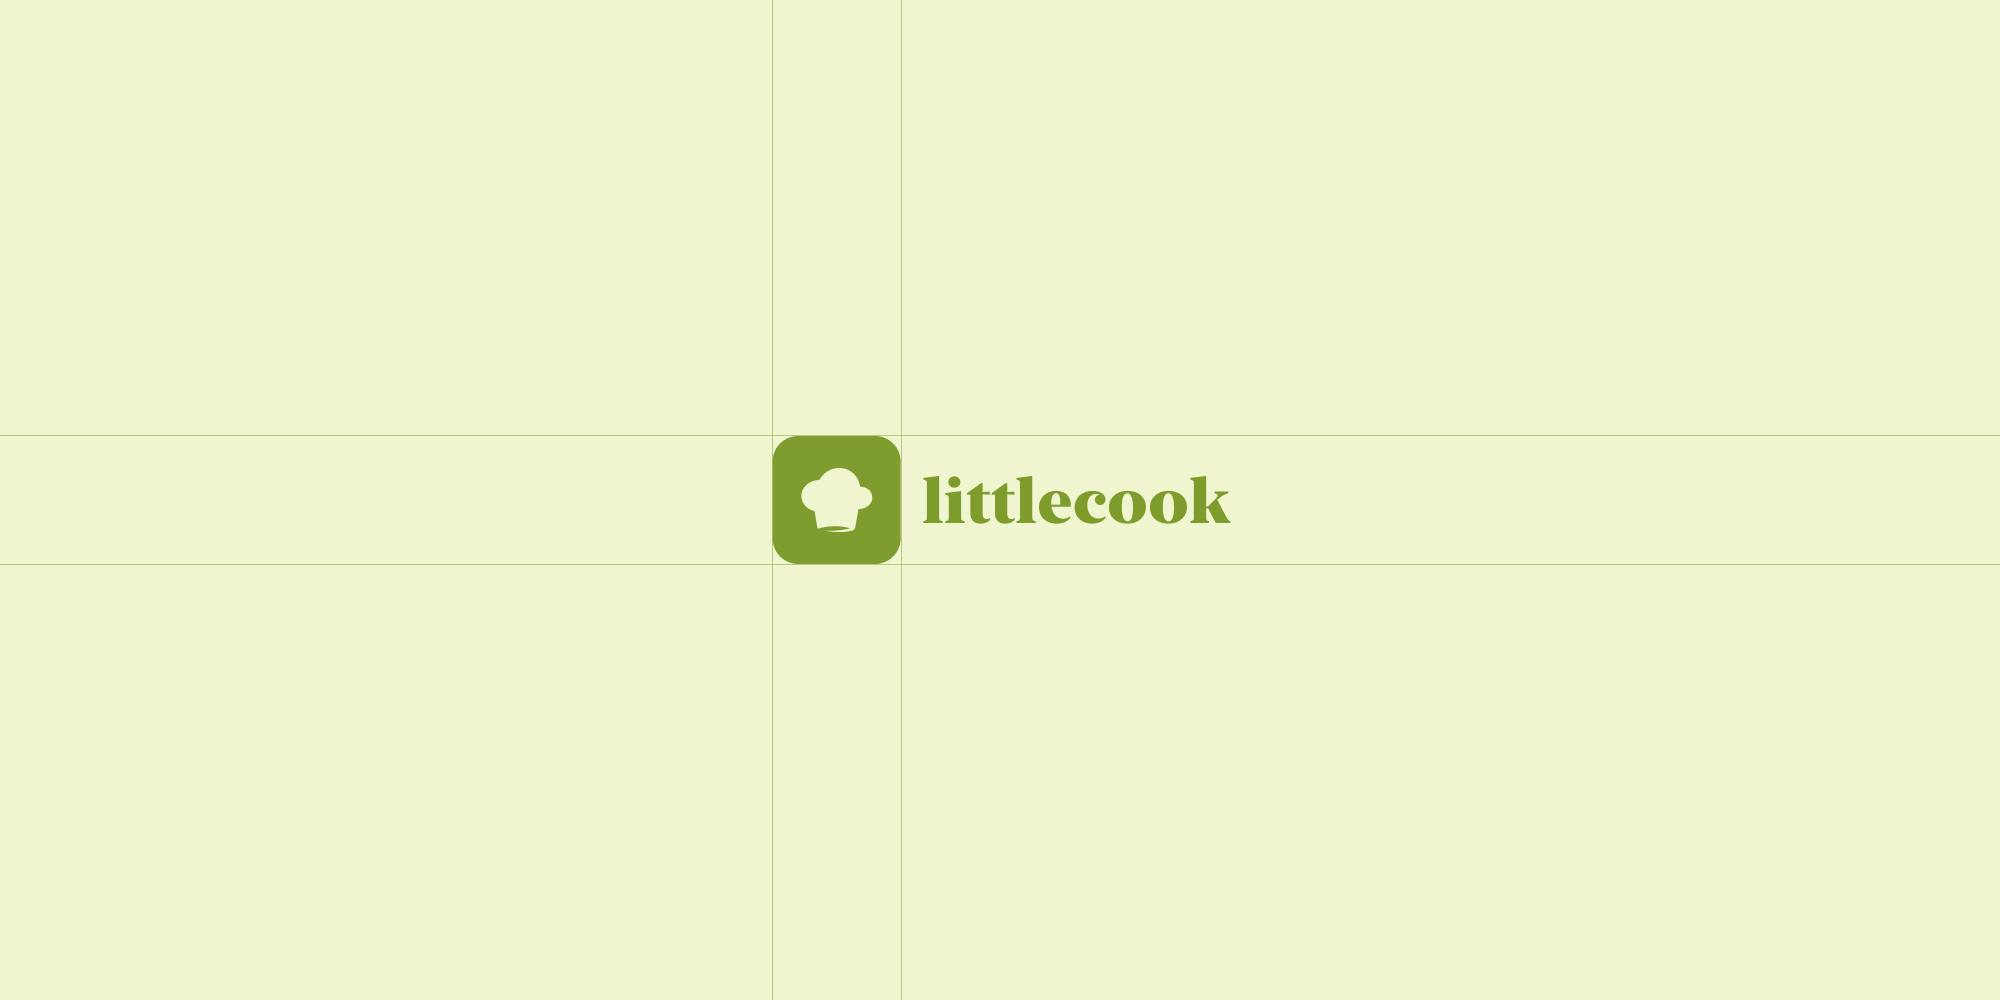 littlecook